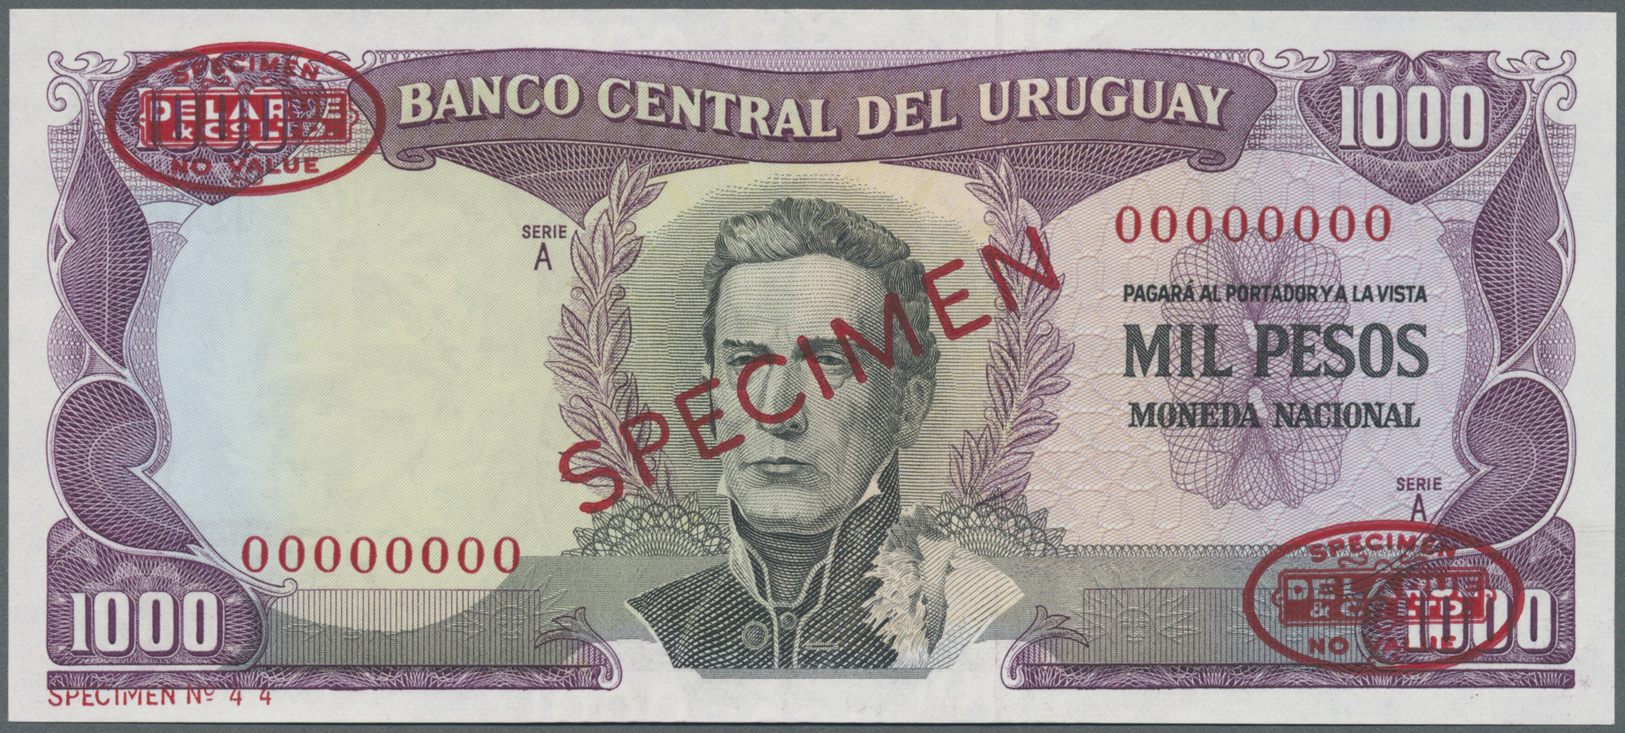 03476 Uruguay: 1000 Pesos 1967 Specimen P. 49s In Condition: UNC. - Uruguay